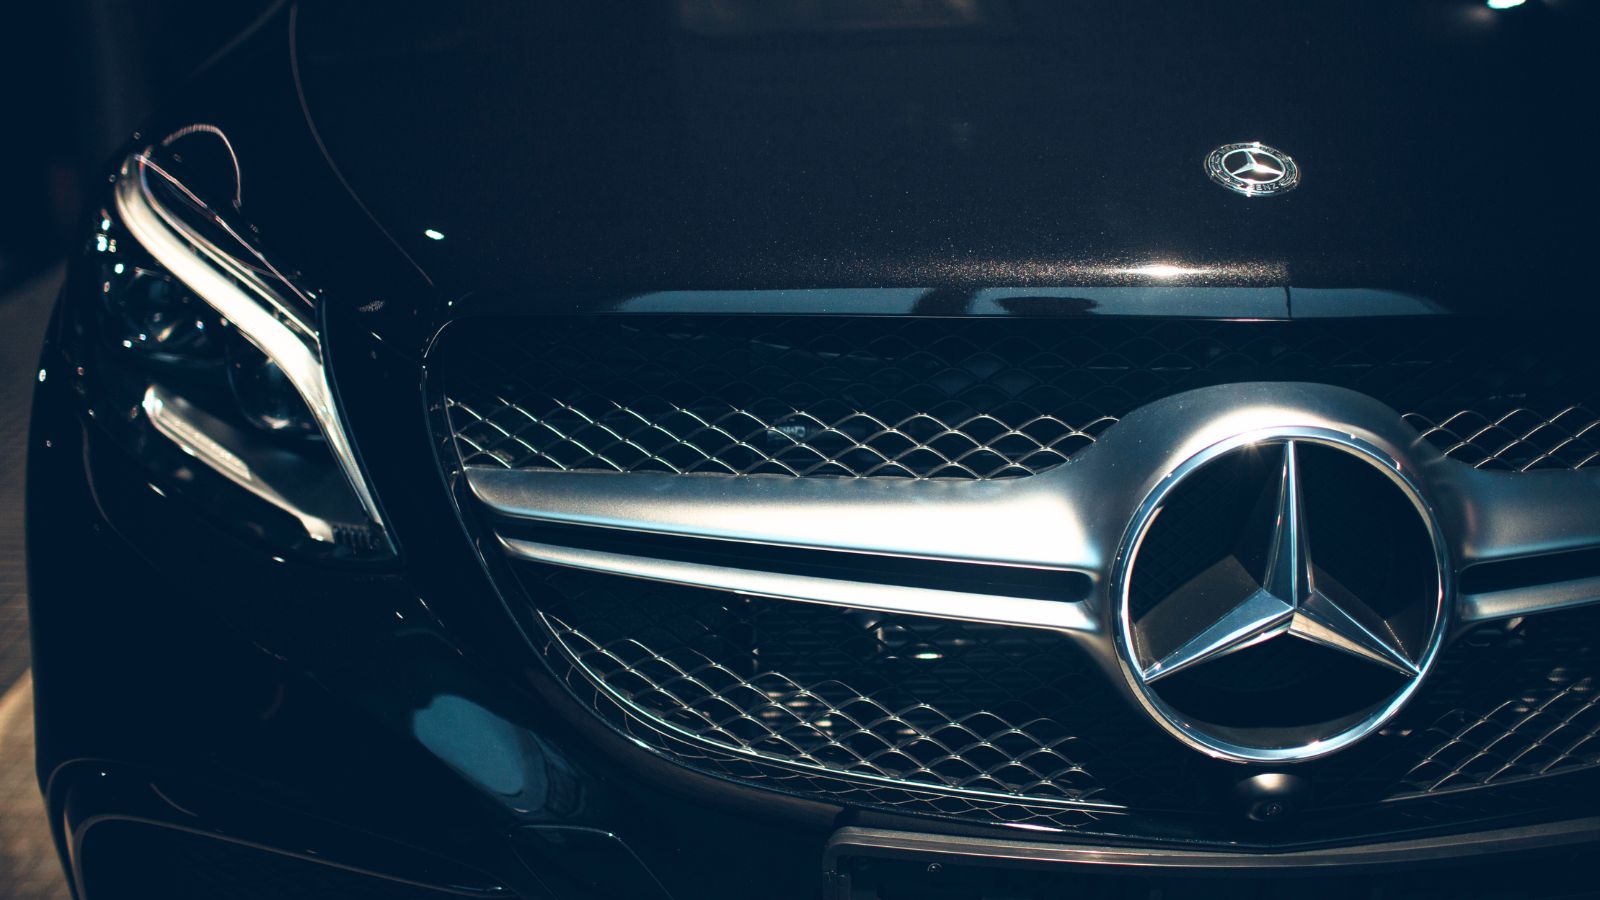 Mercedes A 45S 4MATIC+: arriva il motore più potente di sempre